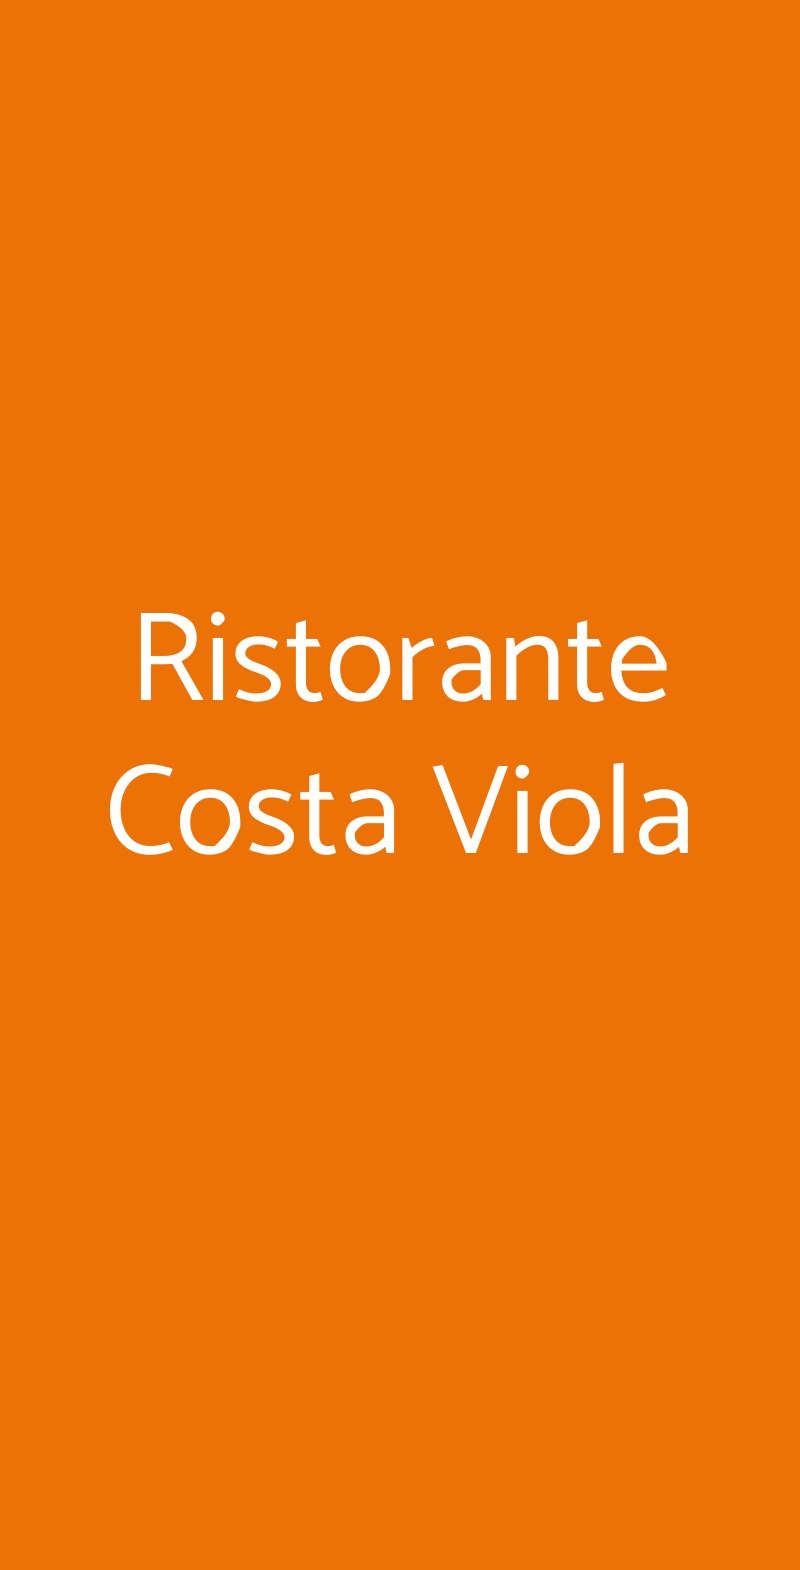 Ristorante Costa Viola Roma menù 1 pagina